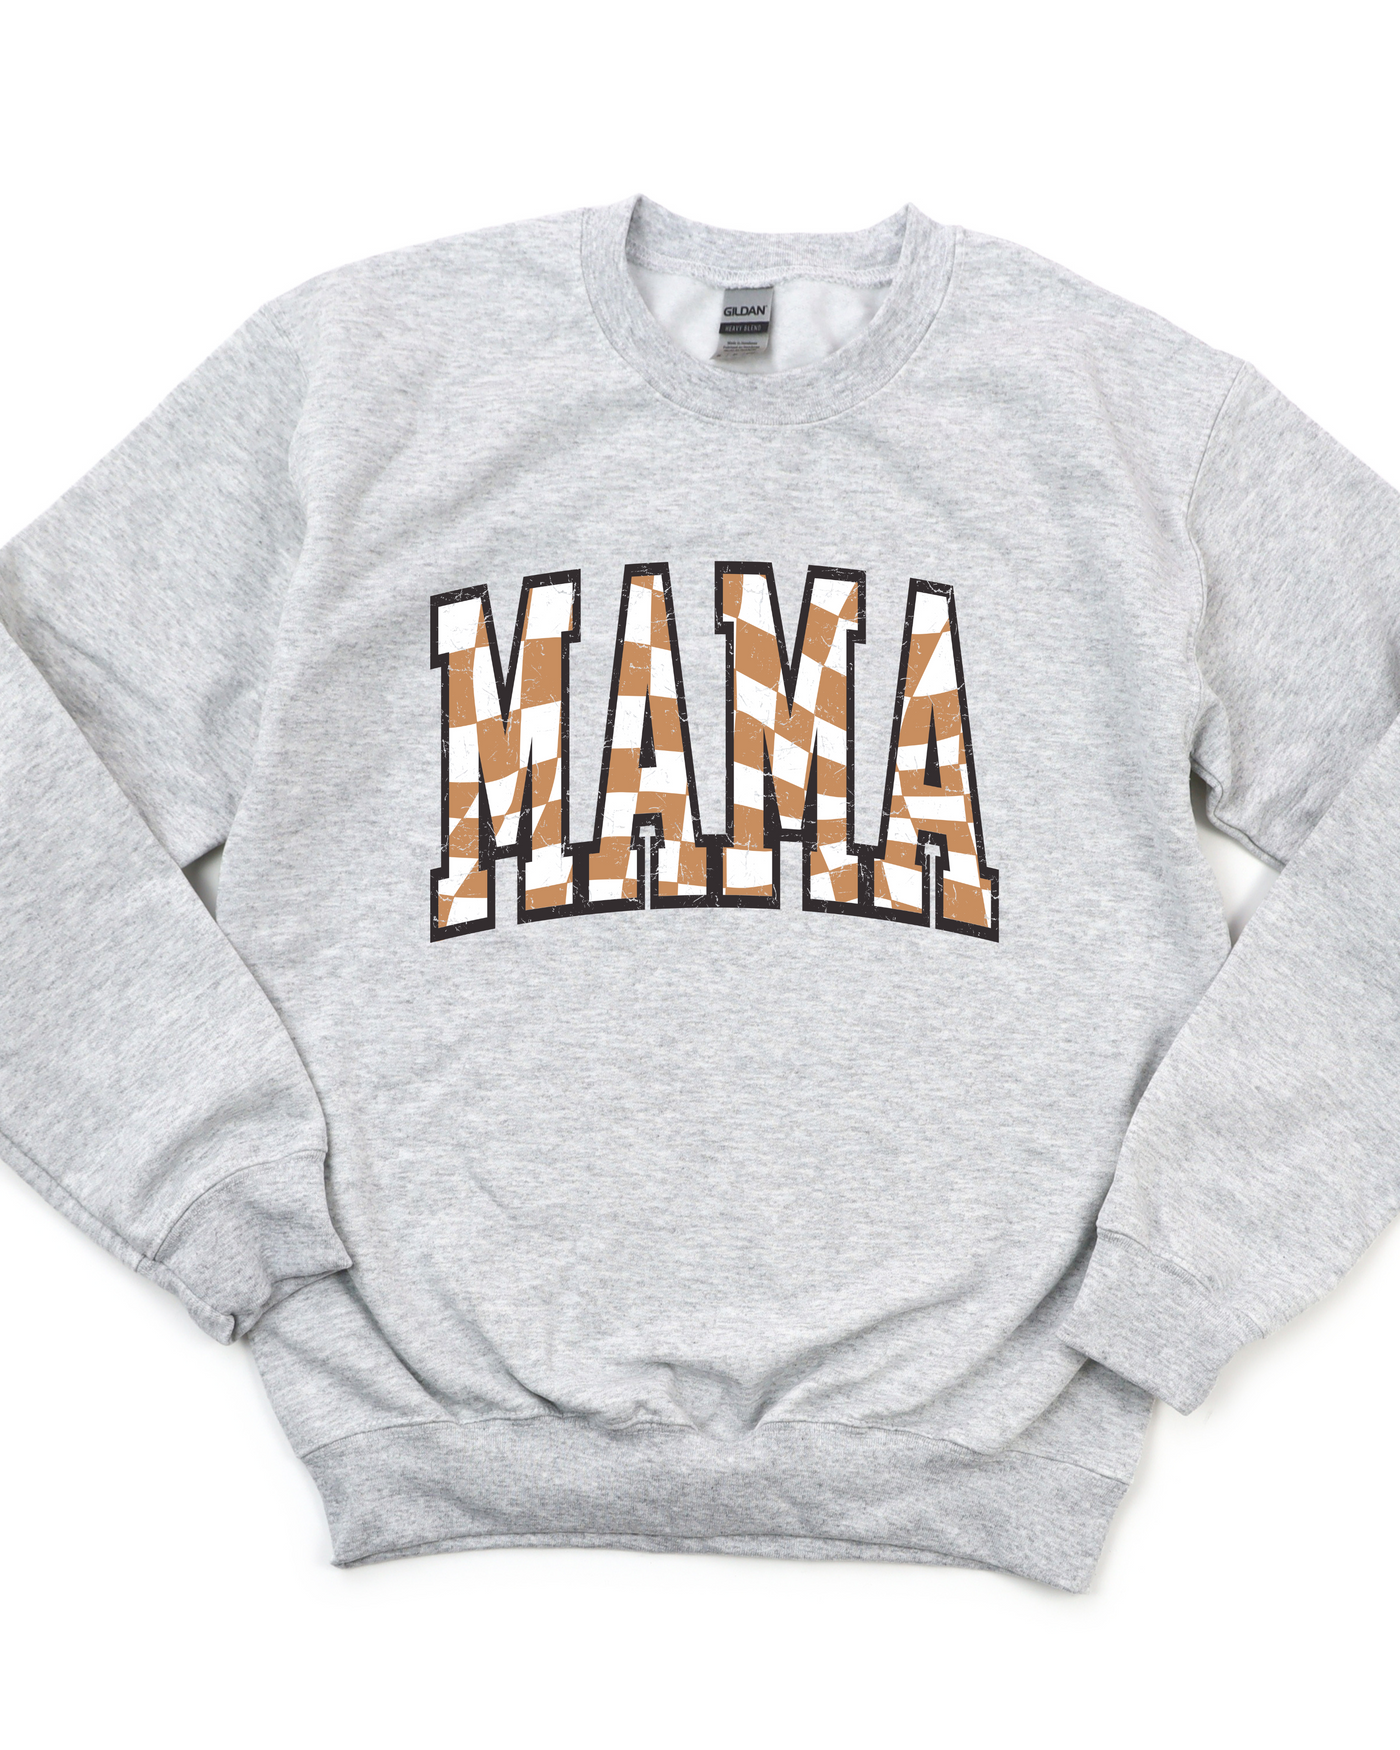 Mama Check Sweatshirt - Luv Lush